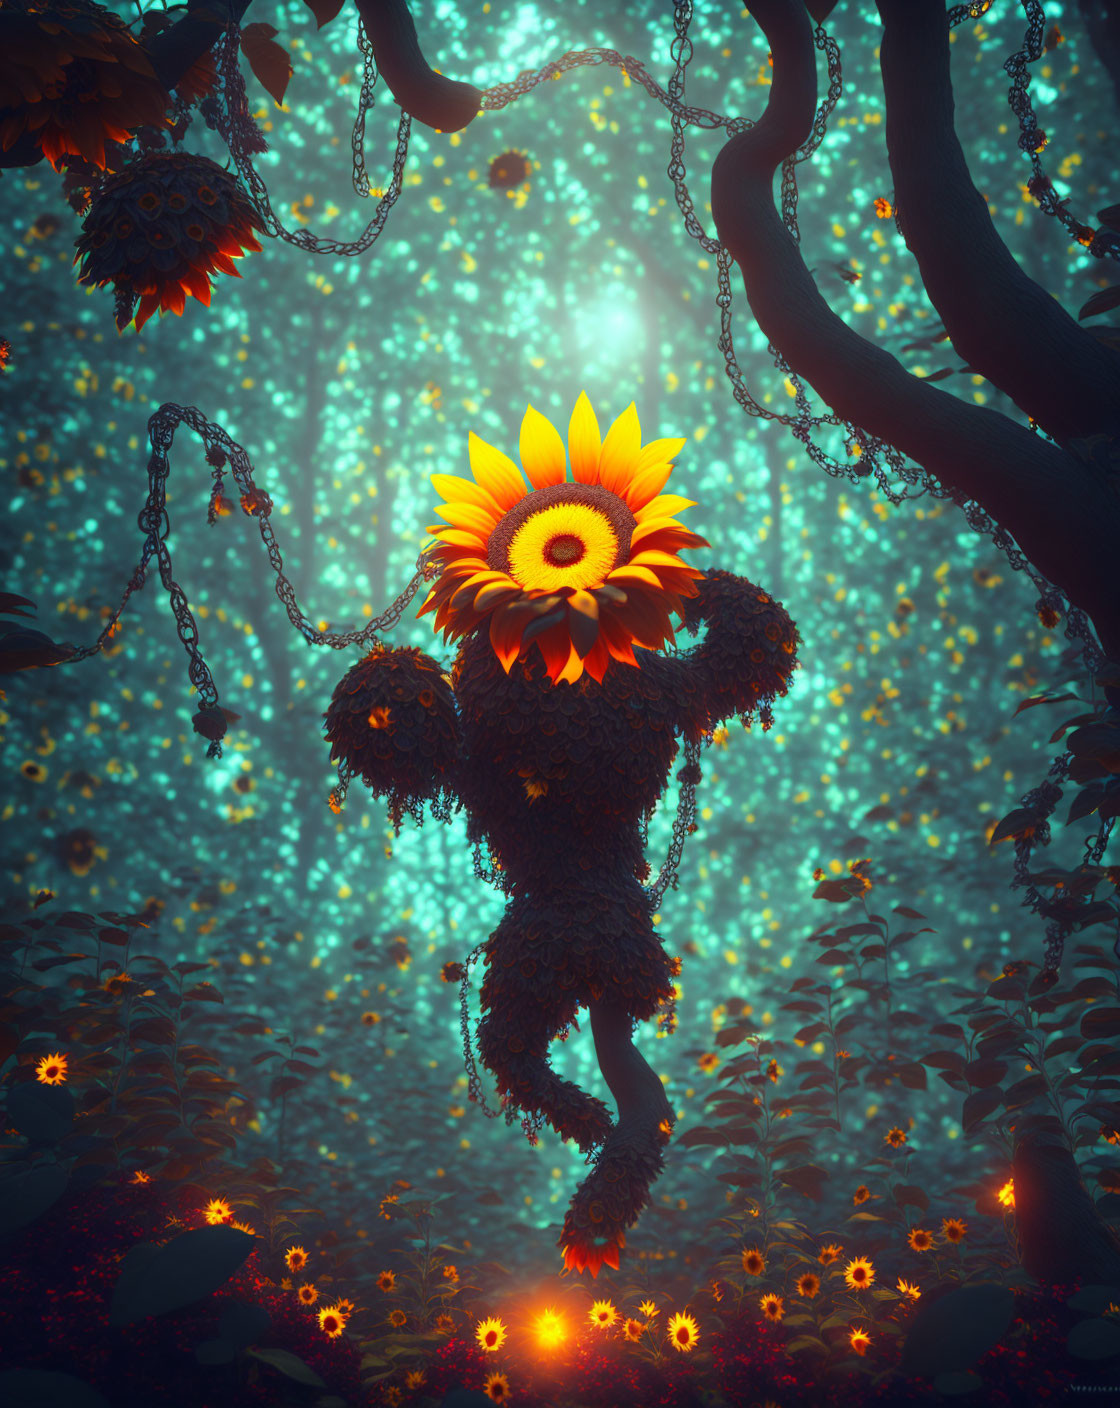 Sunflower magic creature